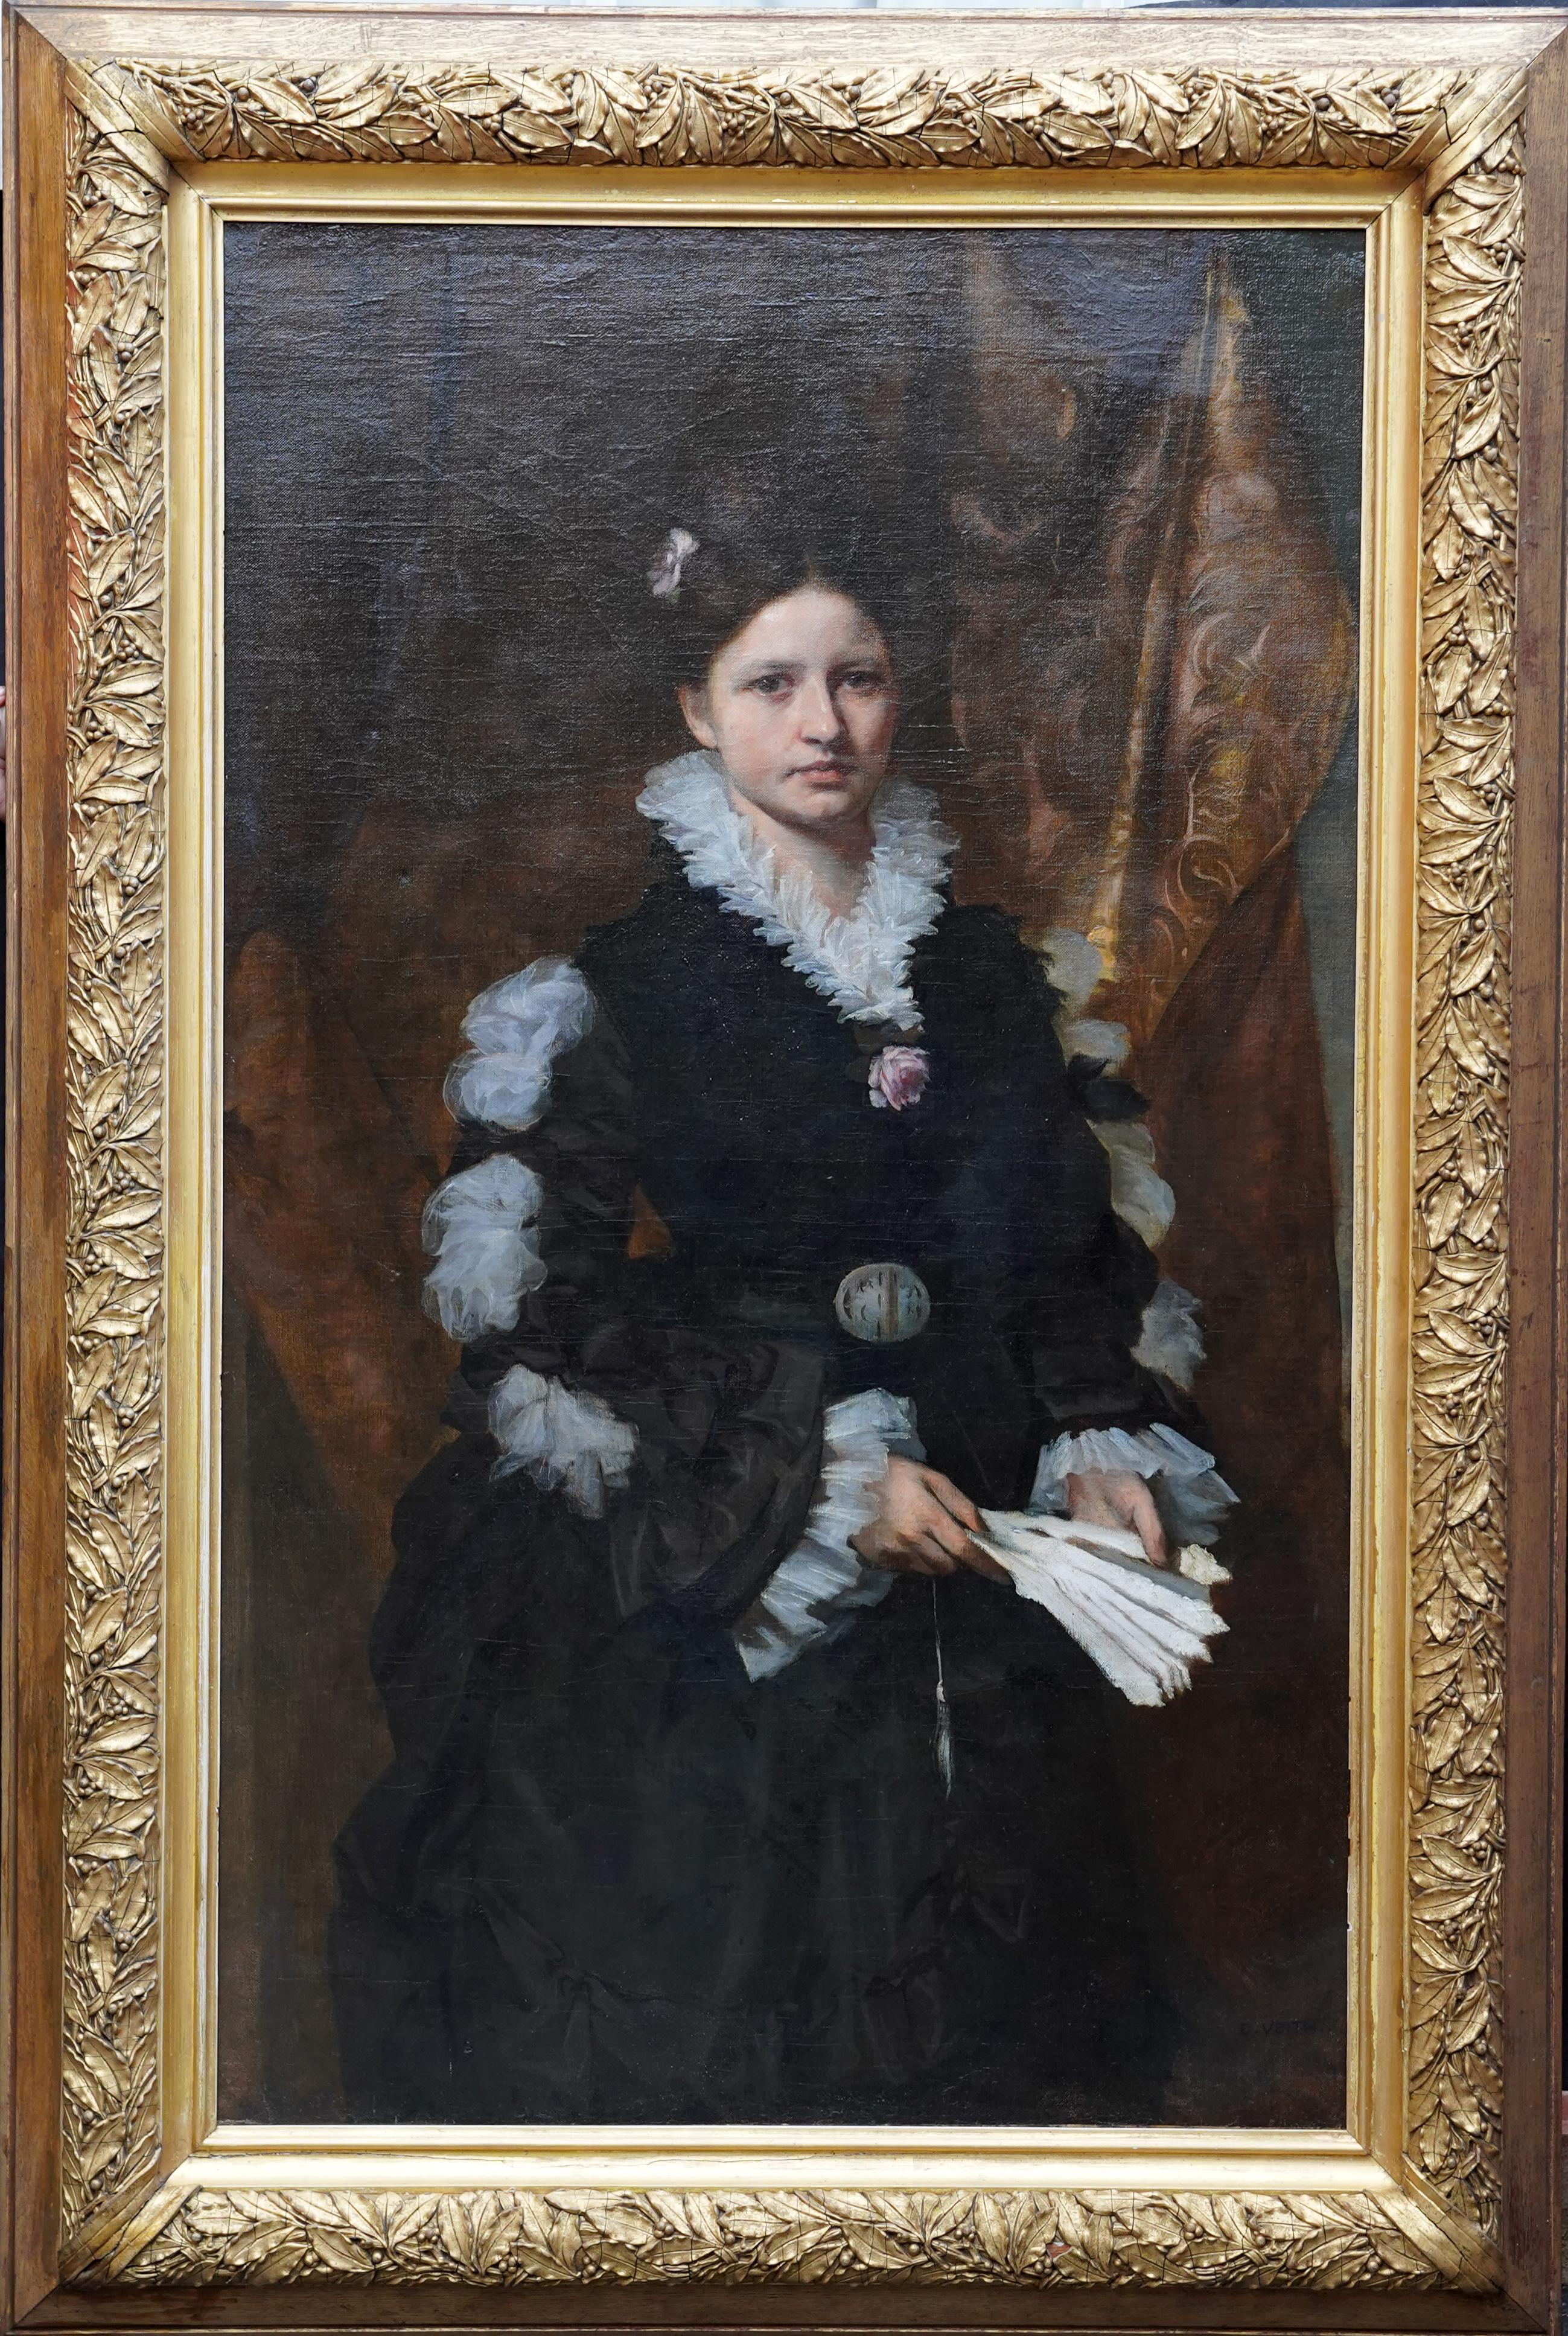 Eduard Veith Portrait Painting - Portrait of an Elegant Lady - Austrian Symbolism 19th century art oil painting